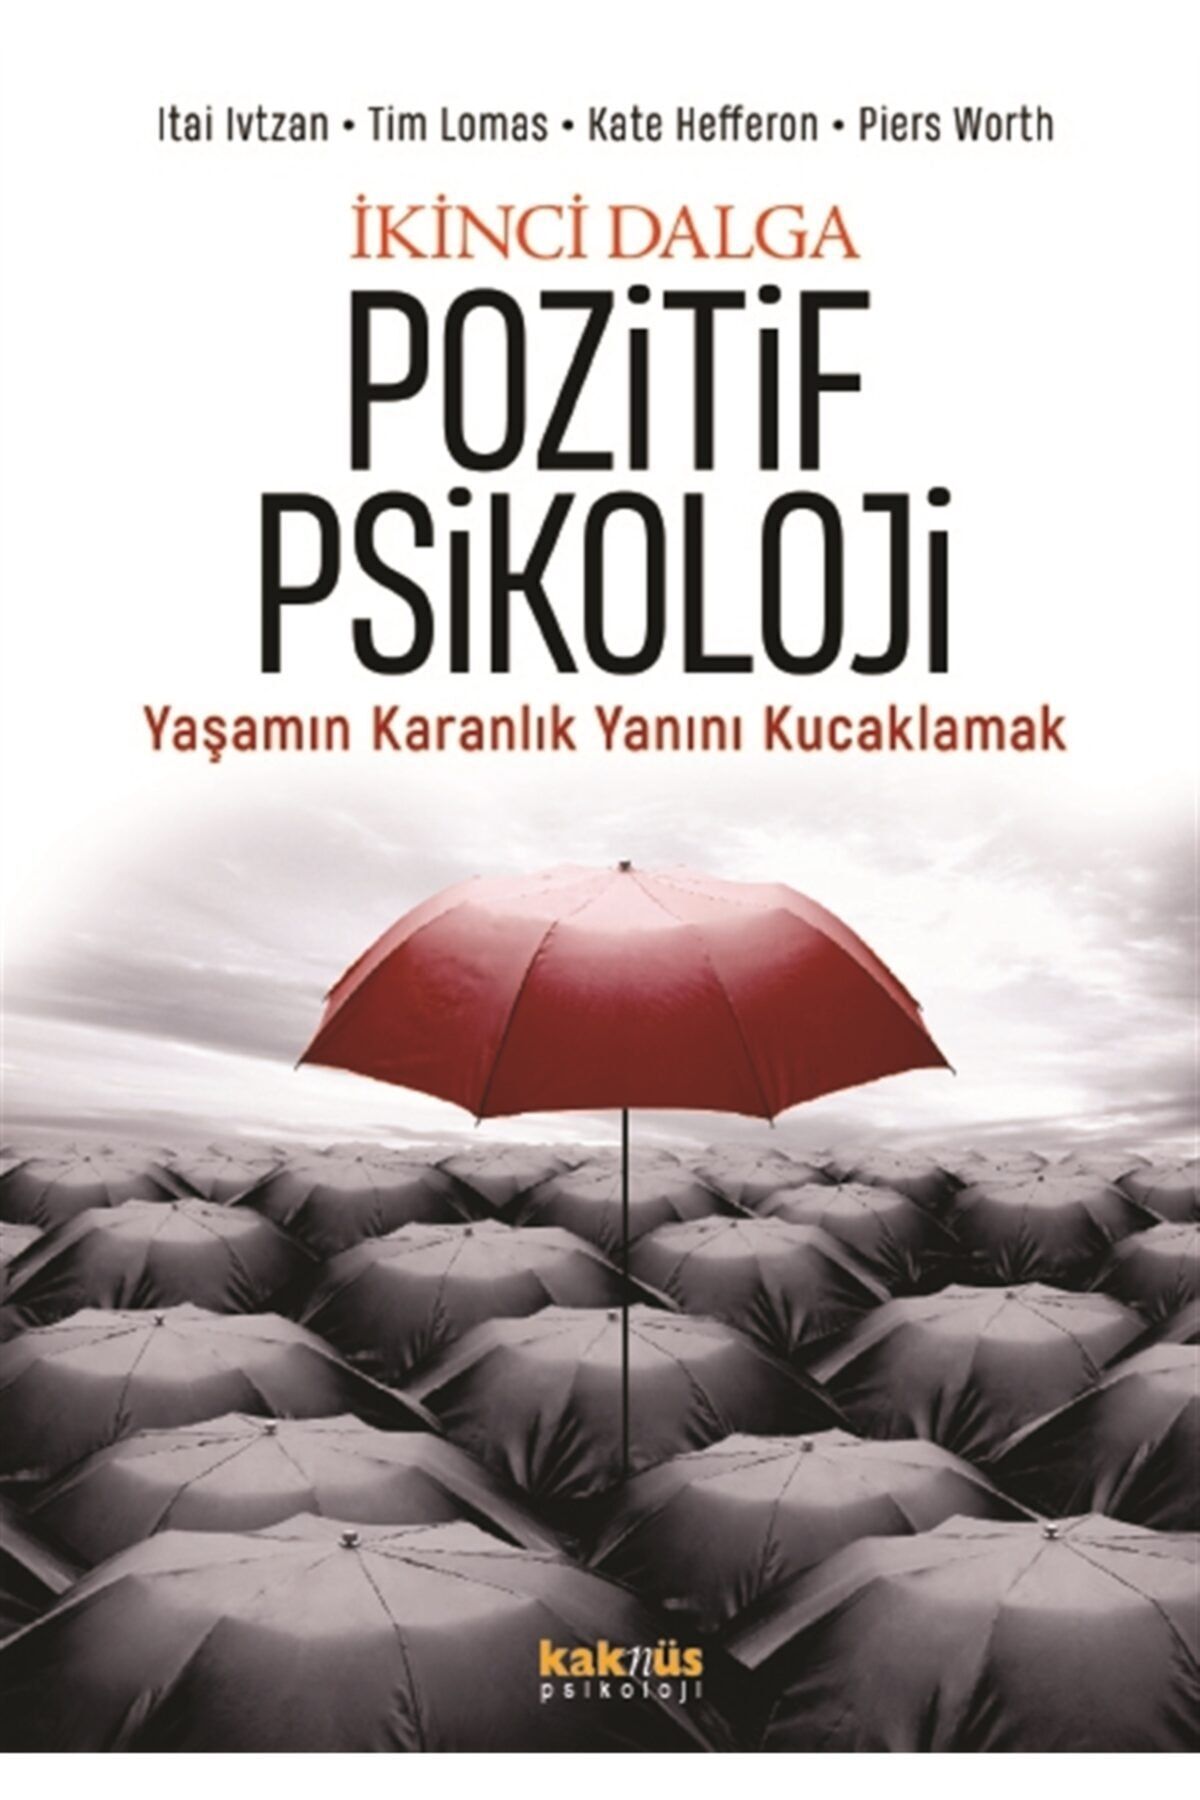 Kaknüs Yayınları - Ders Kitapları Ikinci Dalga Pozitif Psikoloji - Itai Ivtzan 9789752566545